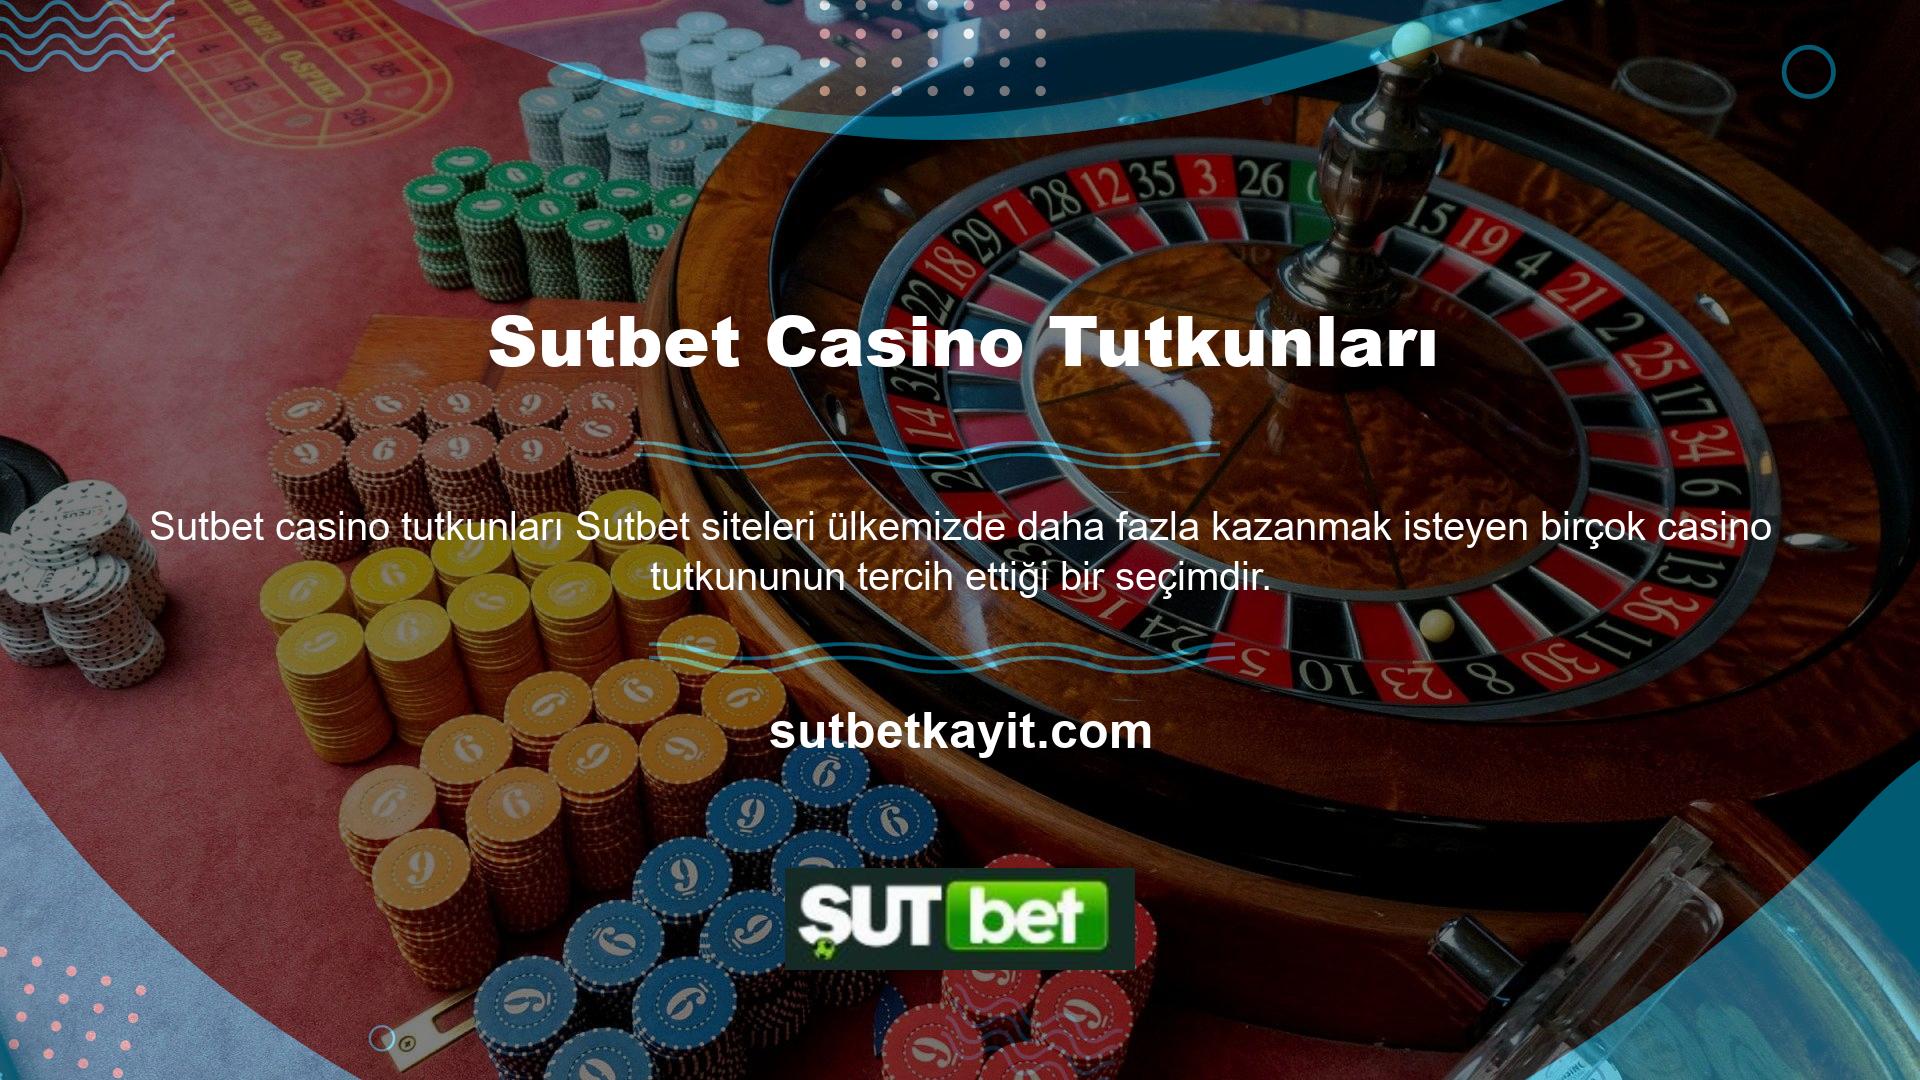 Sutbet siteleri casino meraklıları için gidilecek bir destinasyondur